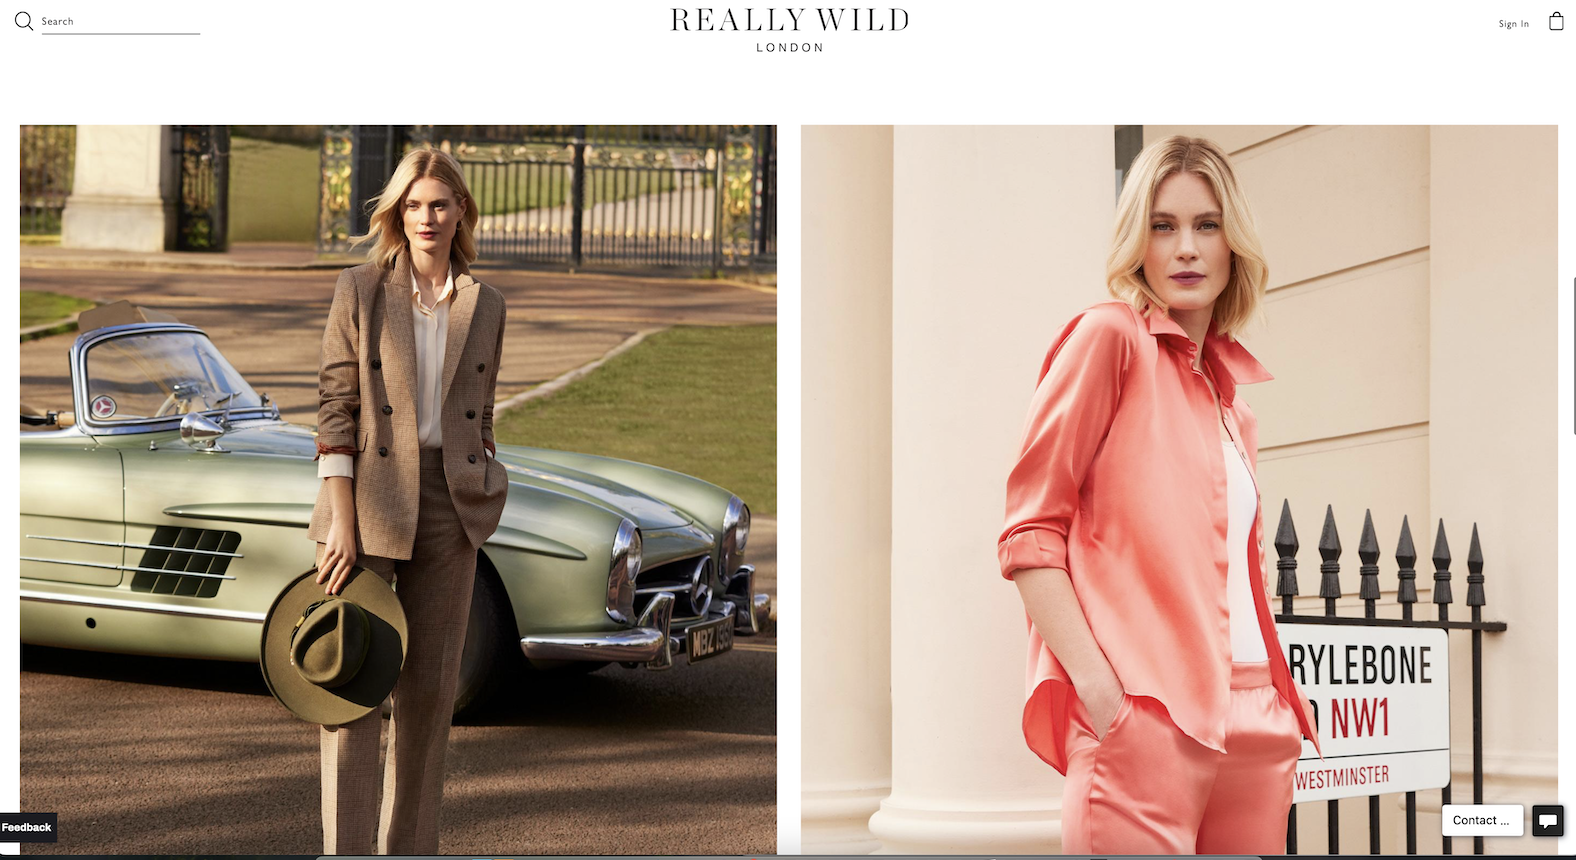 施华洛世奇家族第三代收购英国女装品牌 Really Wild 多数股权